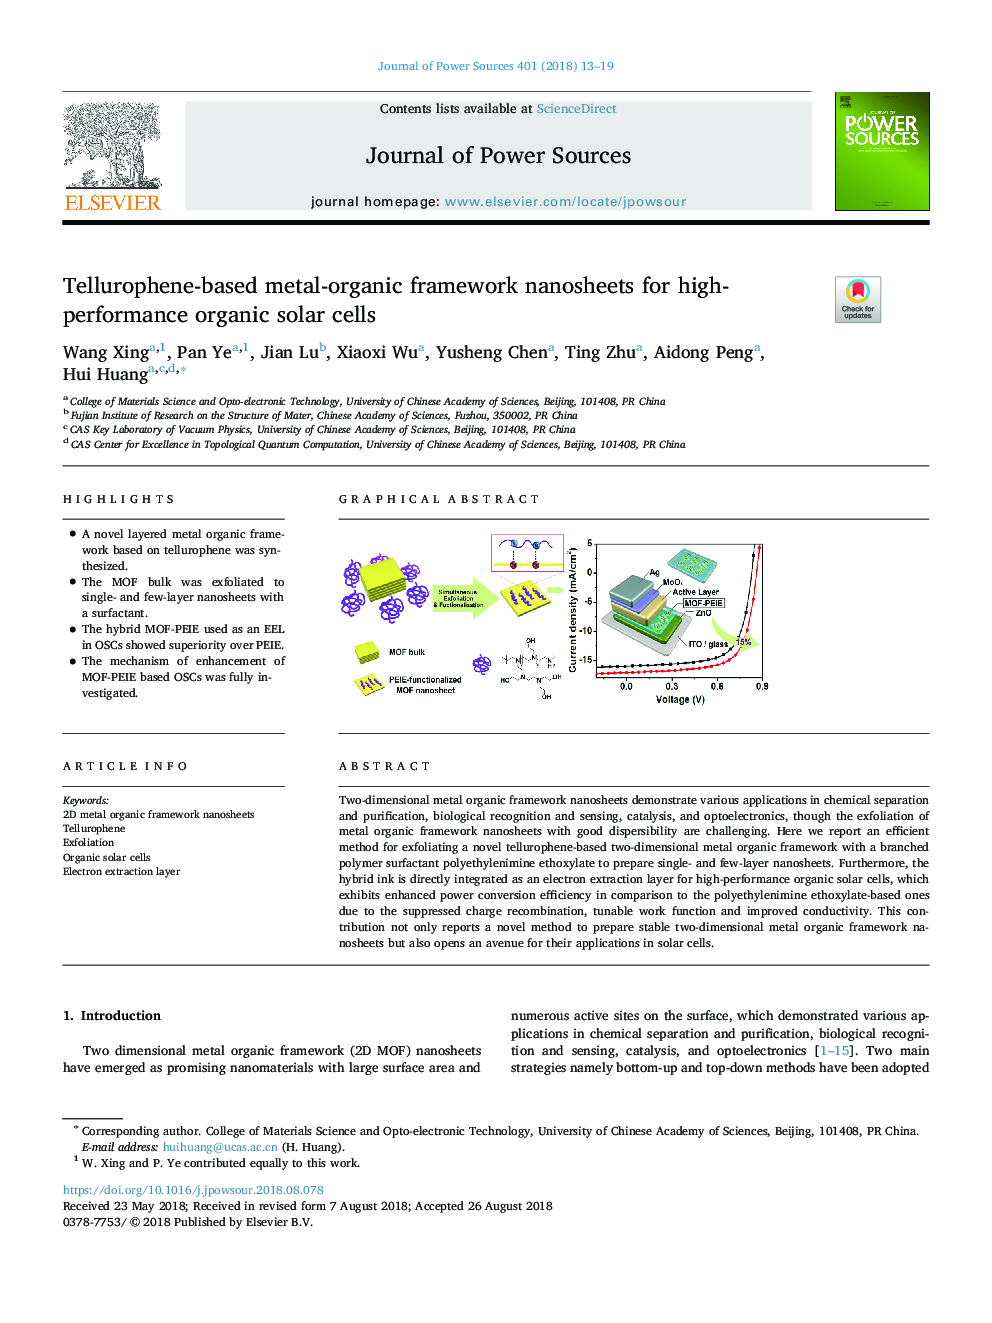 Tellurophene-based metal-organic framework nanosheets for high-performance organic solar cells